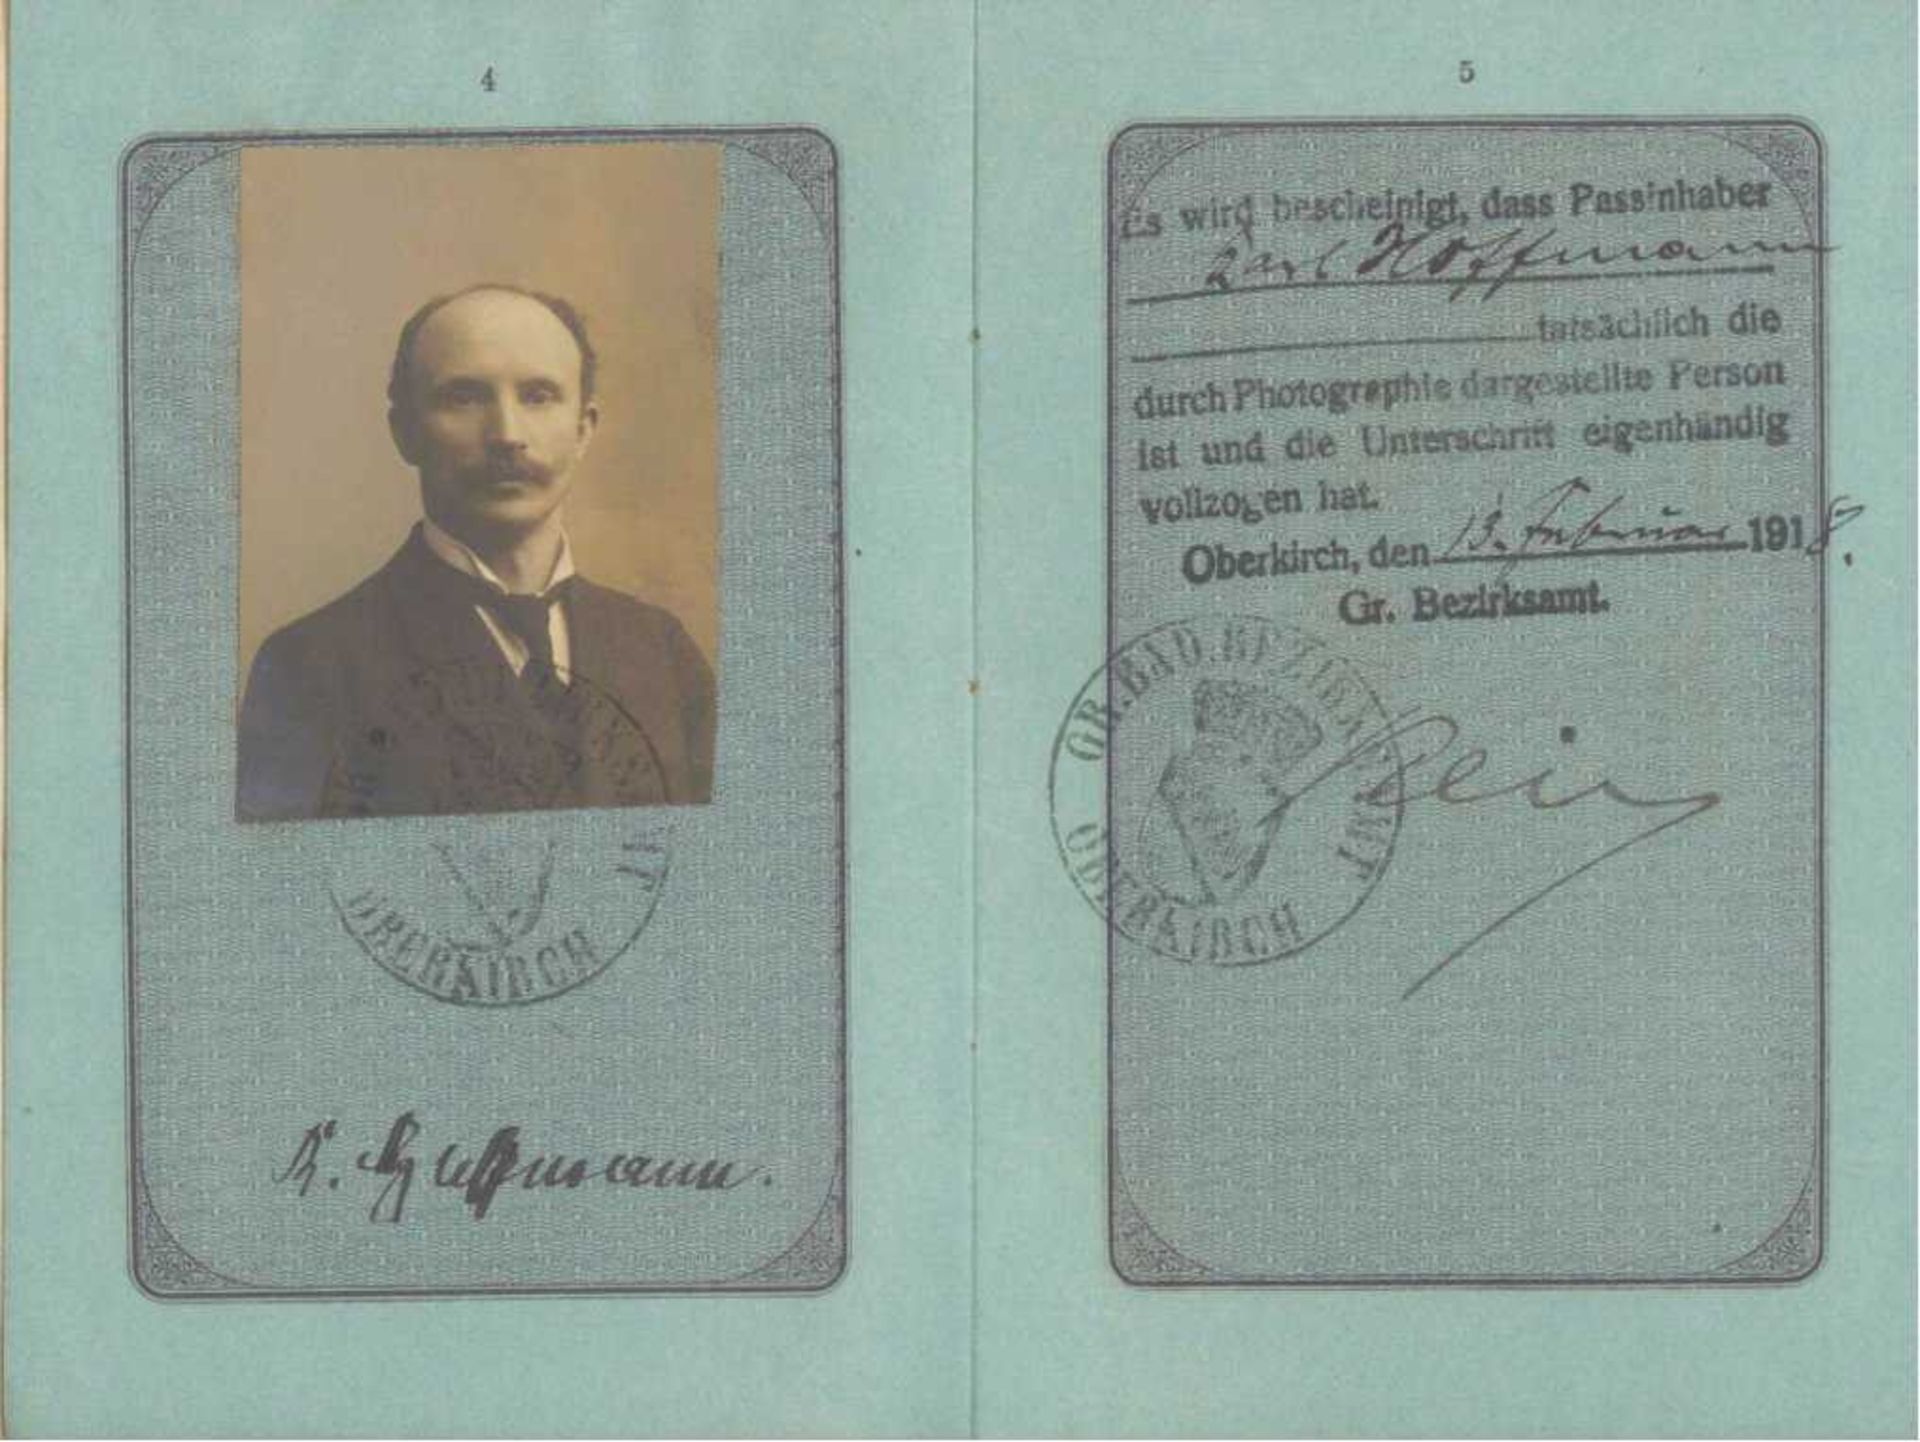 1919 GROSSHERZOGTHUM BADEN; Reise-Pass, OPPENAUReise-Pass des Deutschen Reiches, Inhaber der Notar - Image 3 of 3